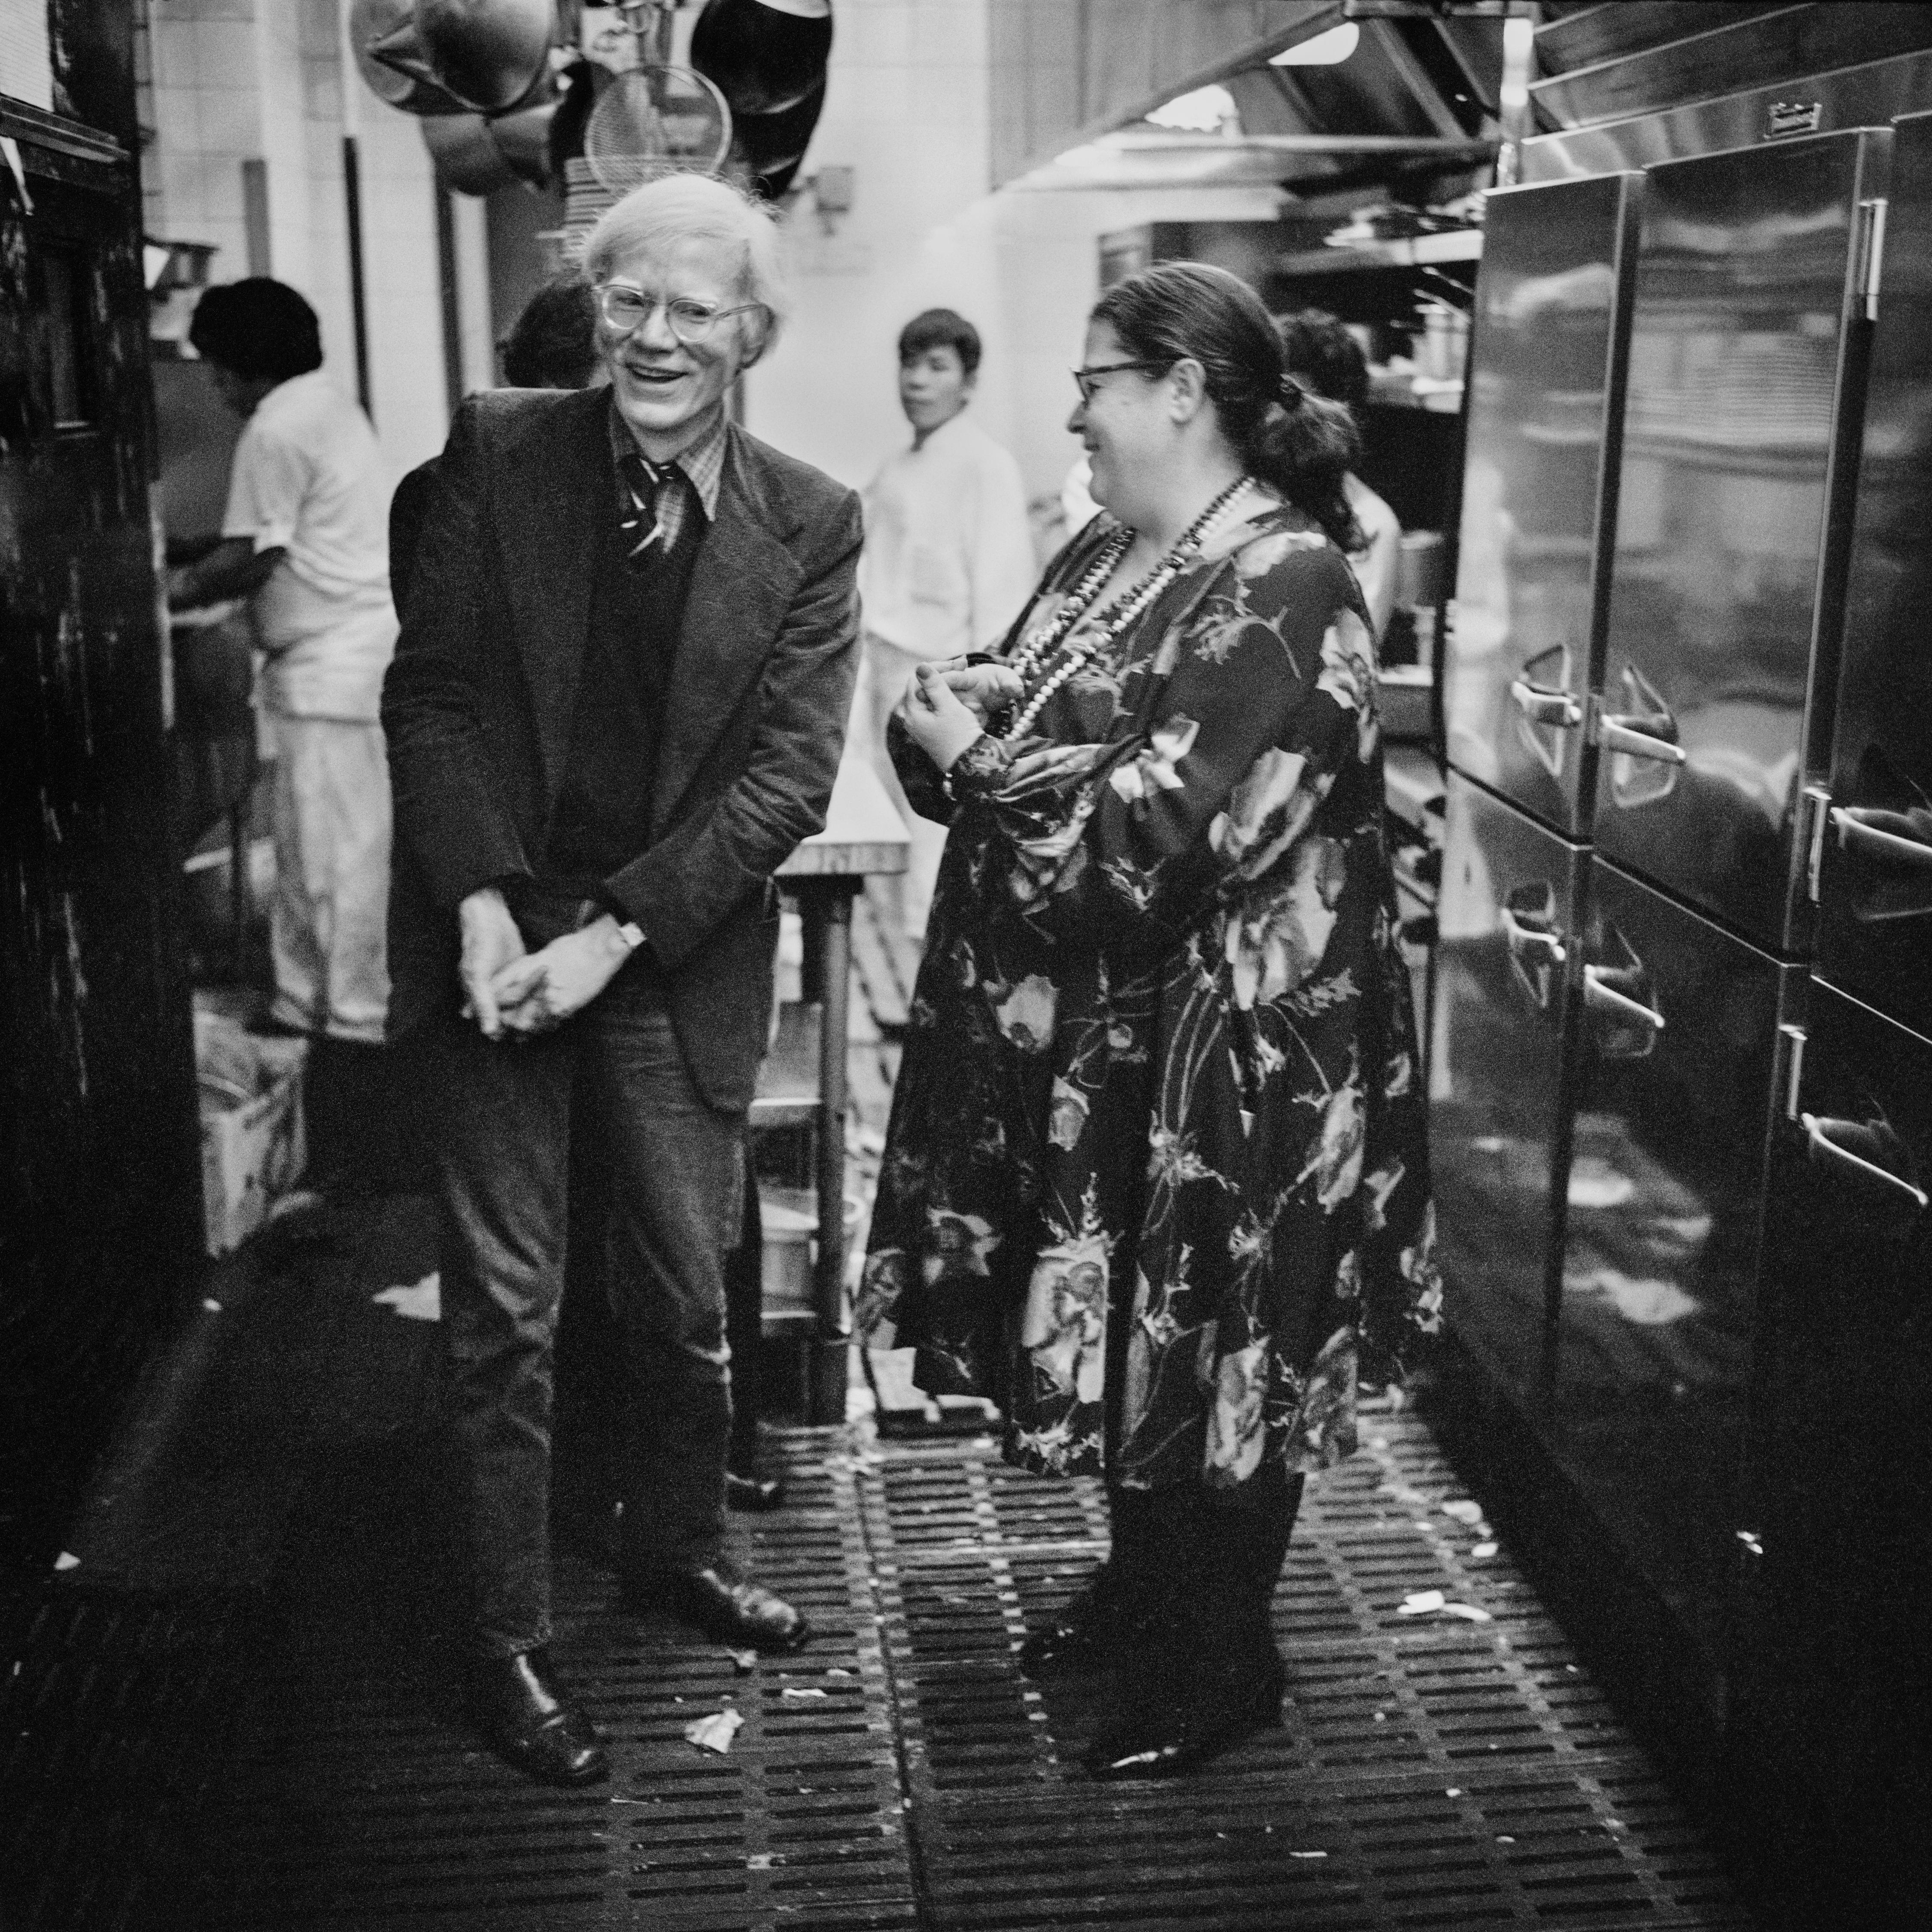 Elaine's Kitchen - Andy Warhol et Elaine, New York, 1976

Photographié par Jonathan Becker
Contemporain
14